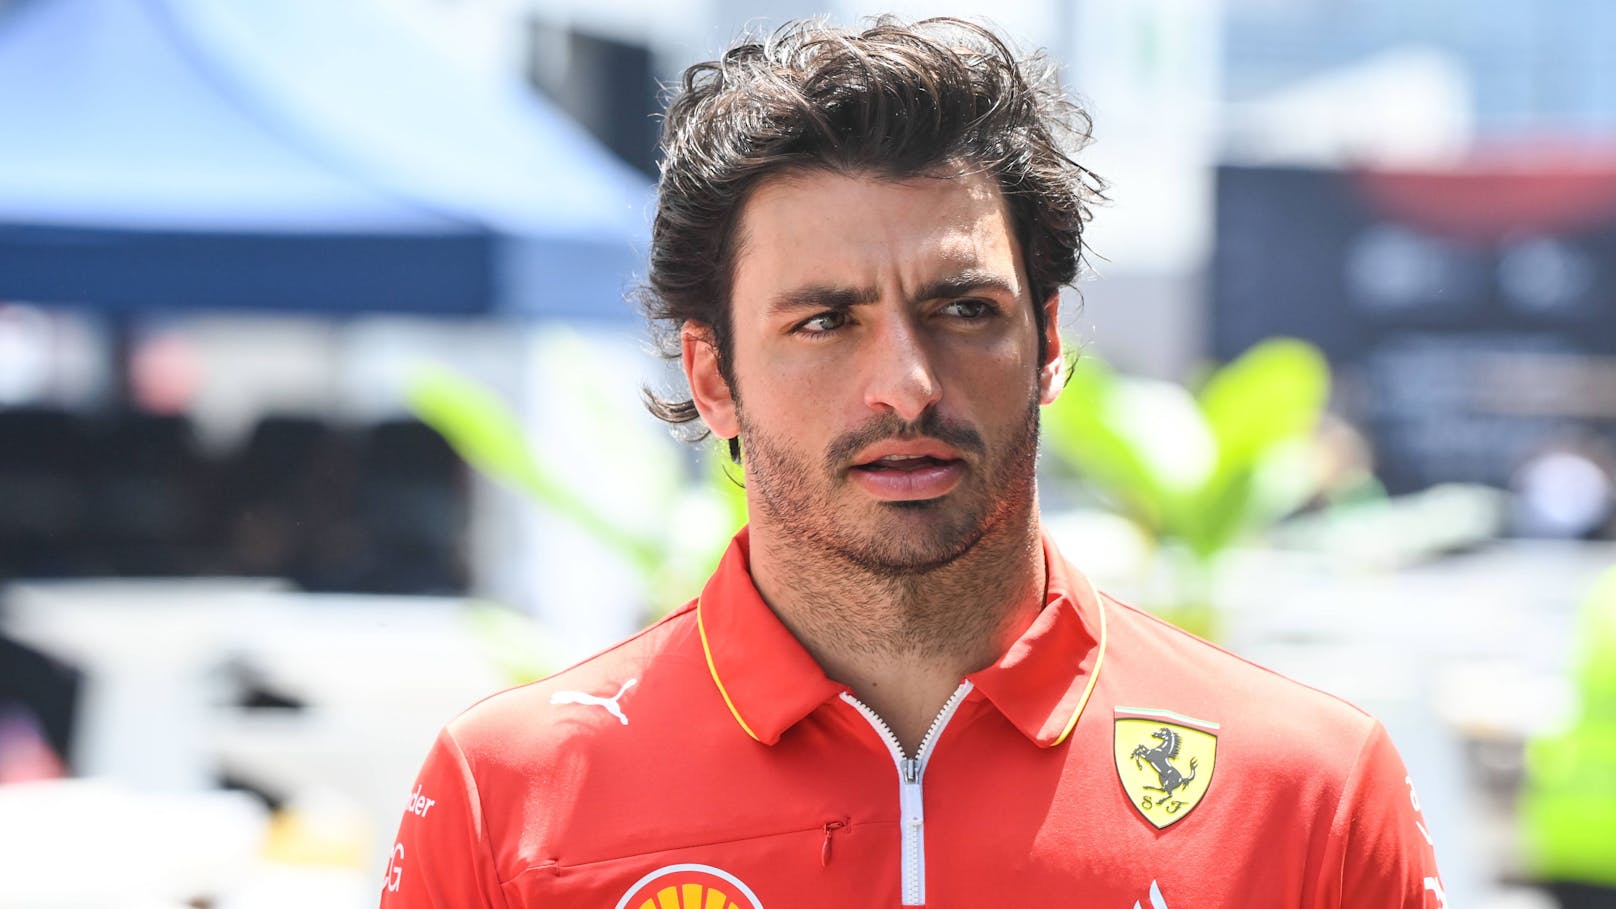 Blinddarm-OP! Ferrari-Star verpasst Saudi-Rennen